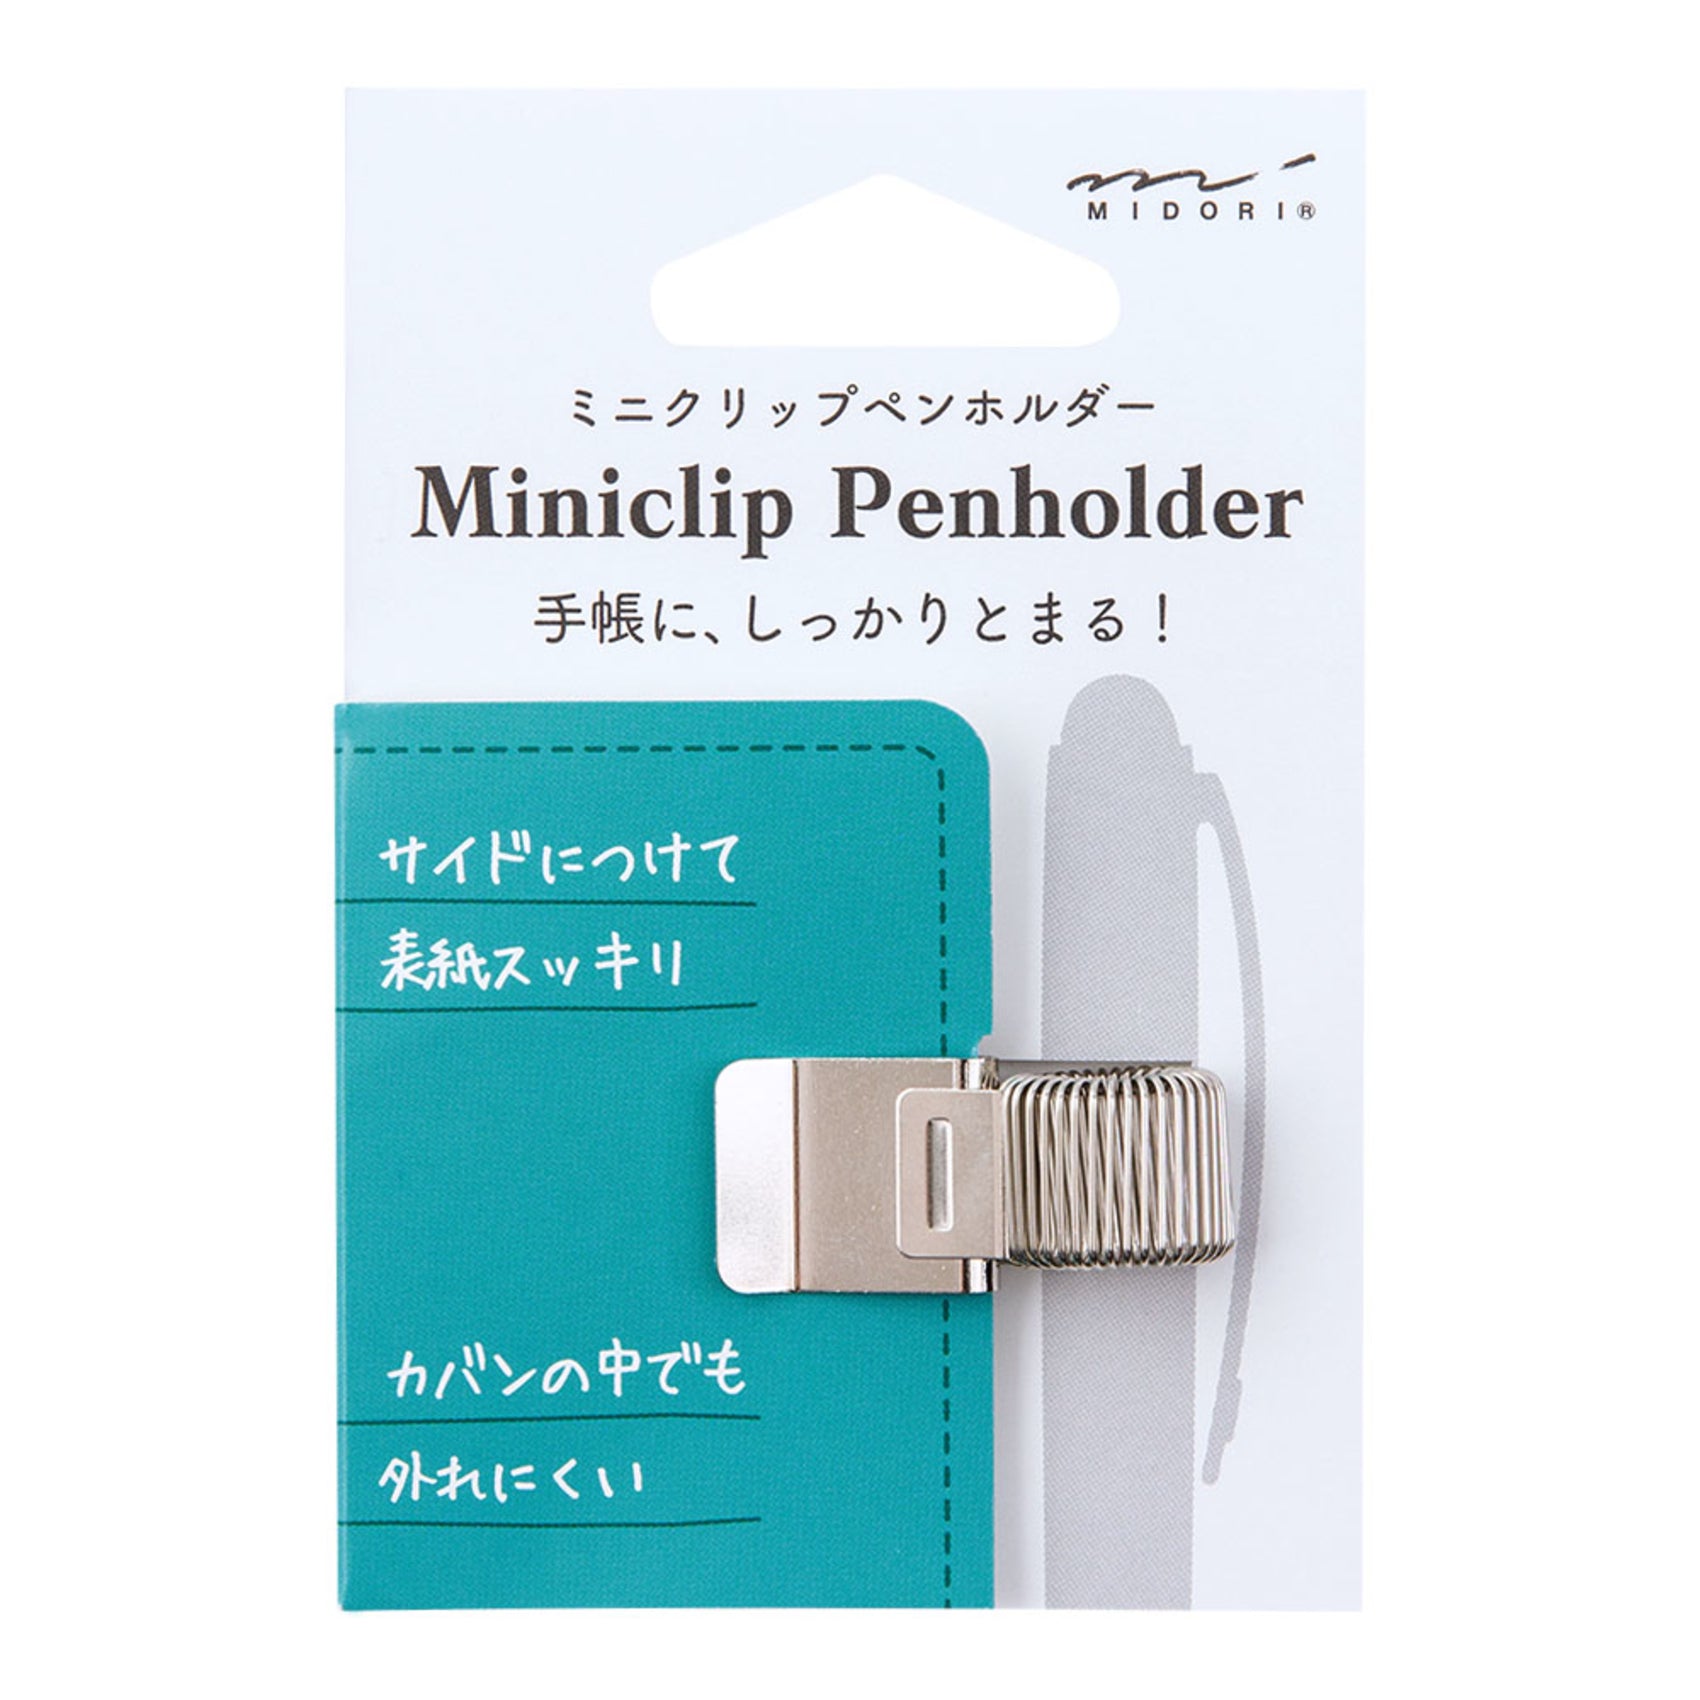 Midori Mini Clip Pen Holder - Silver